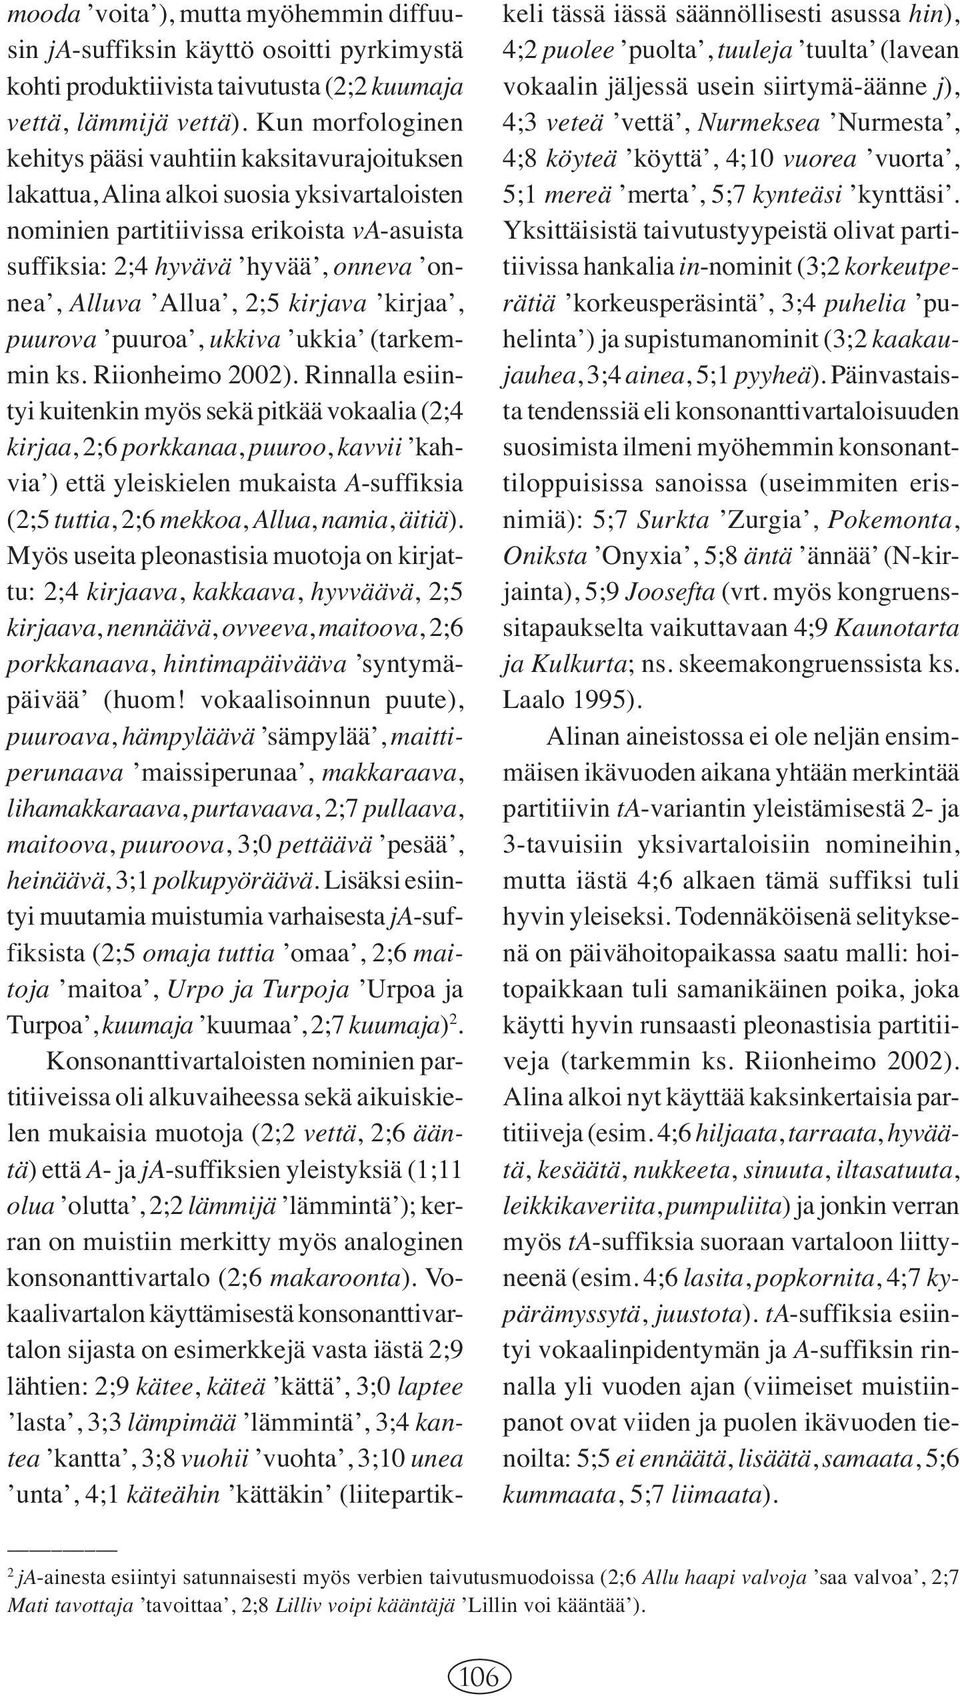 Alluva Allua, 2;5 kirjava kirjaa, puurova puuroa, ukkiva ukkia (tarkemmin ks. Riionheimo 2002).